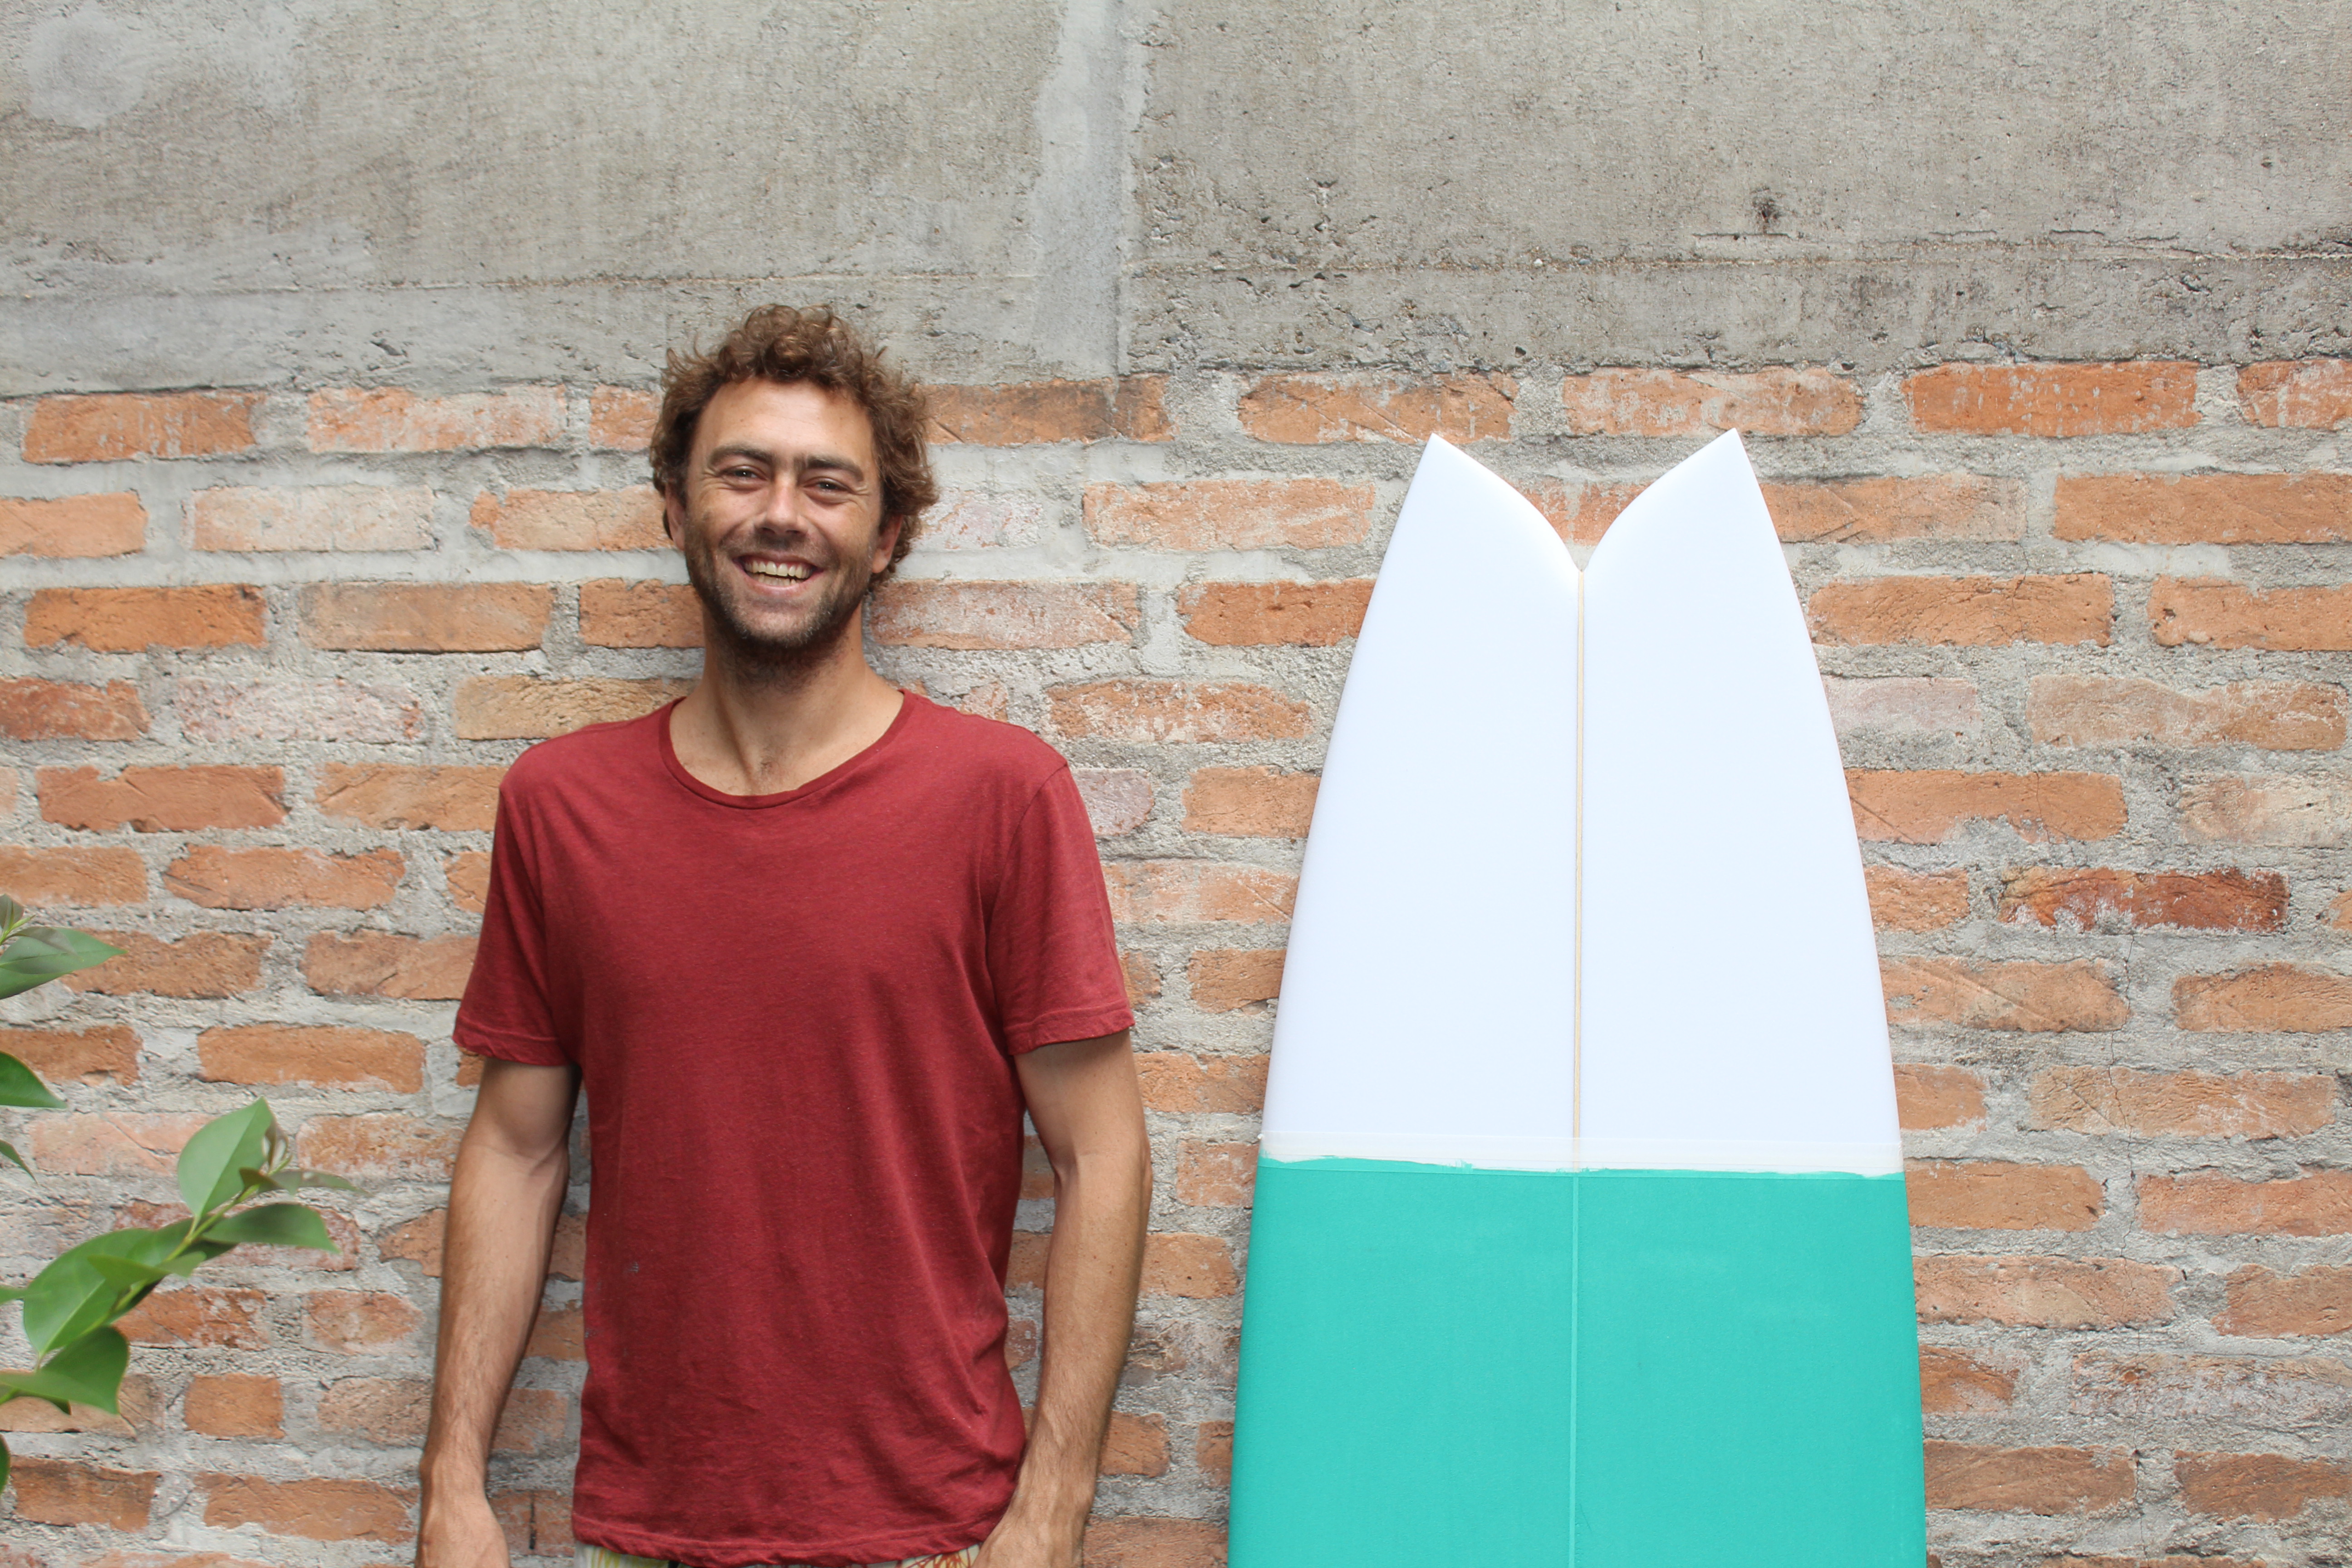 Shaper e surfista Gregório Motta, proprietário da marca Aerofish.